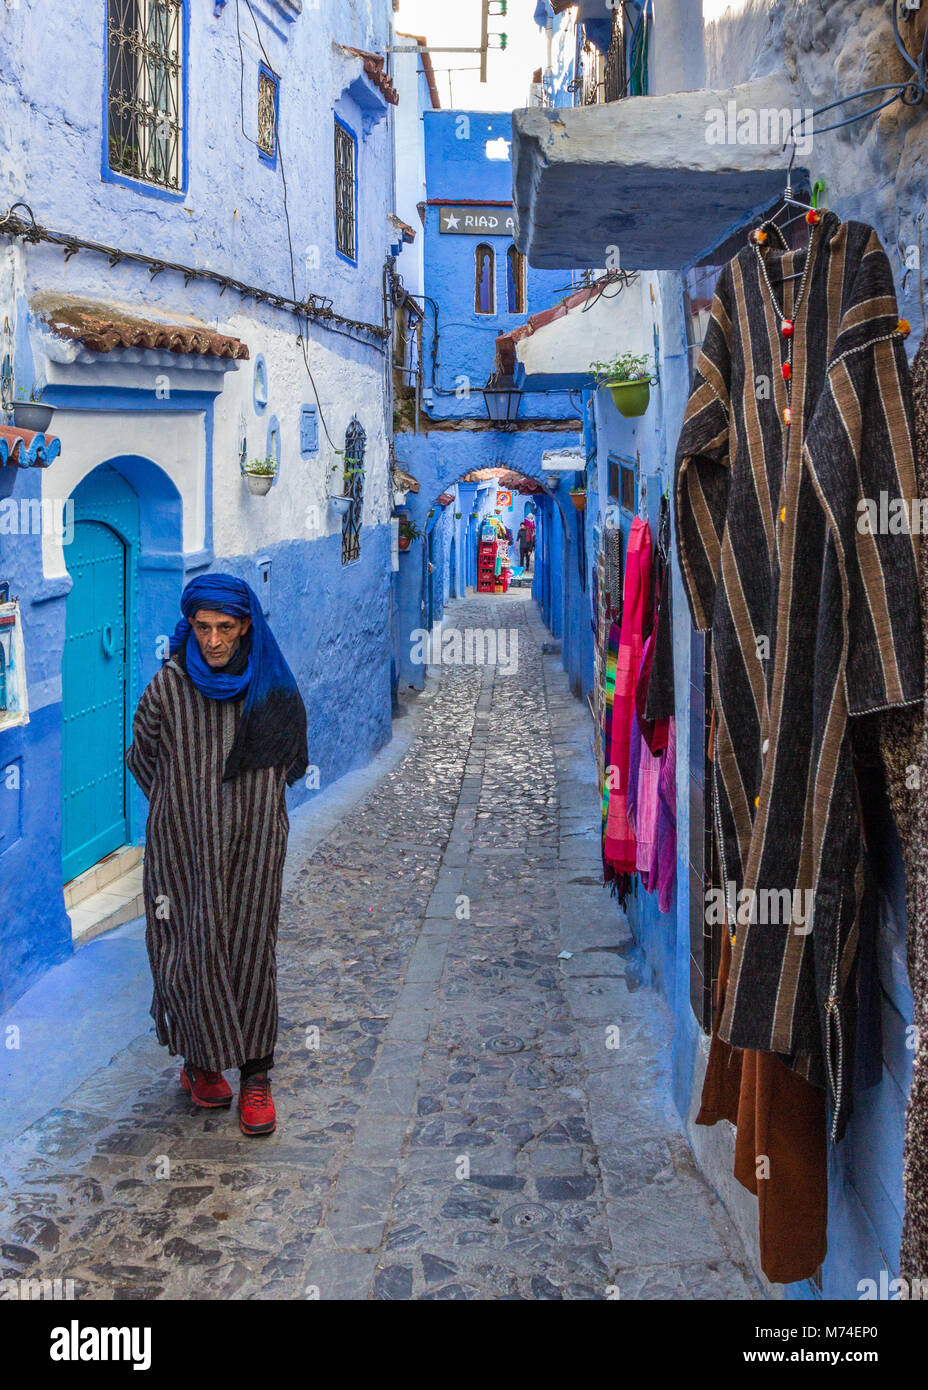 Un uomo locale in abito tradizionale abbigliamento passeggiate lungo la colorata stretta viuzza acciottolata nella città blu di Chefchaouen, Marocco. Djebella riagganciare. Foto Stock